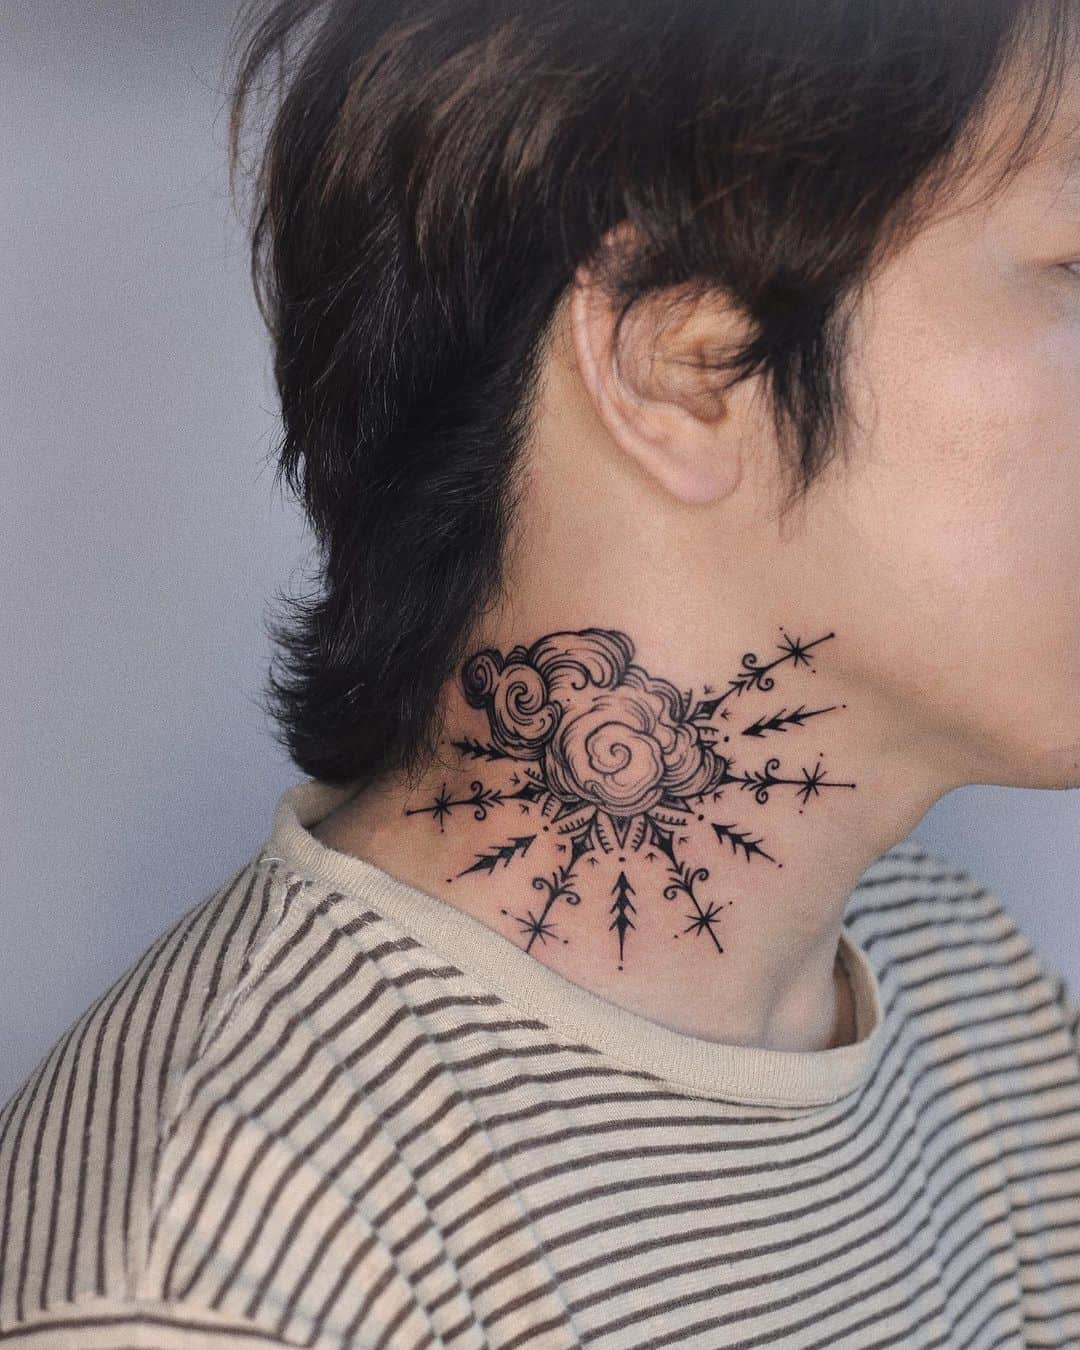 Black cloud tattoo design by imsumimi